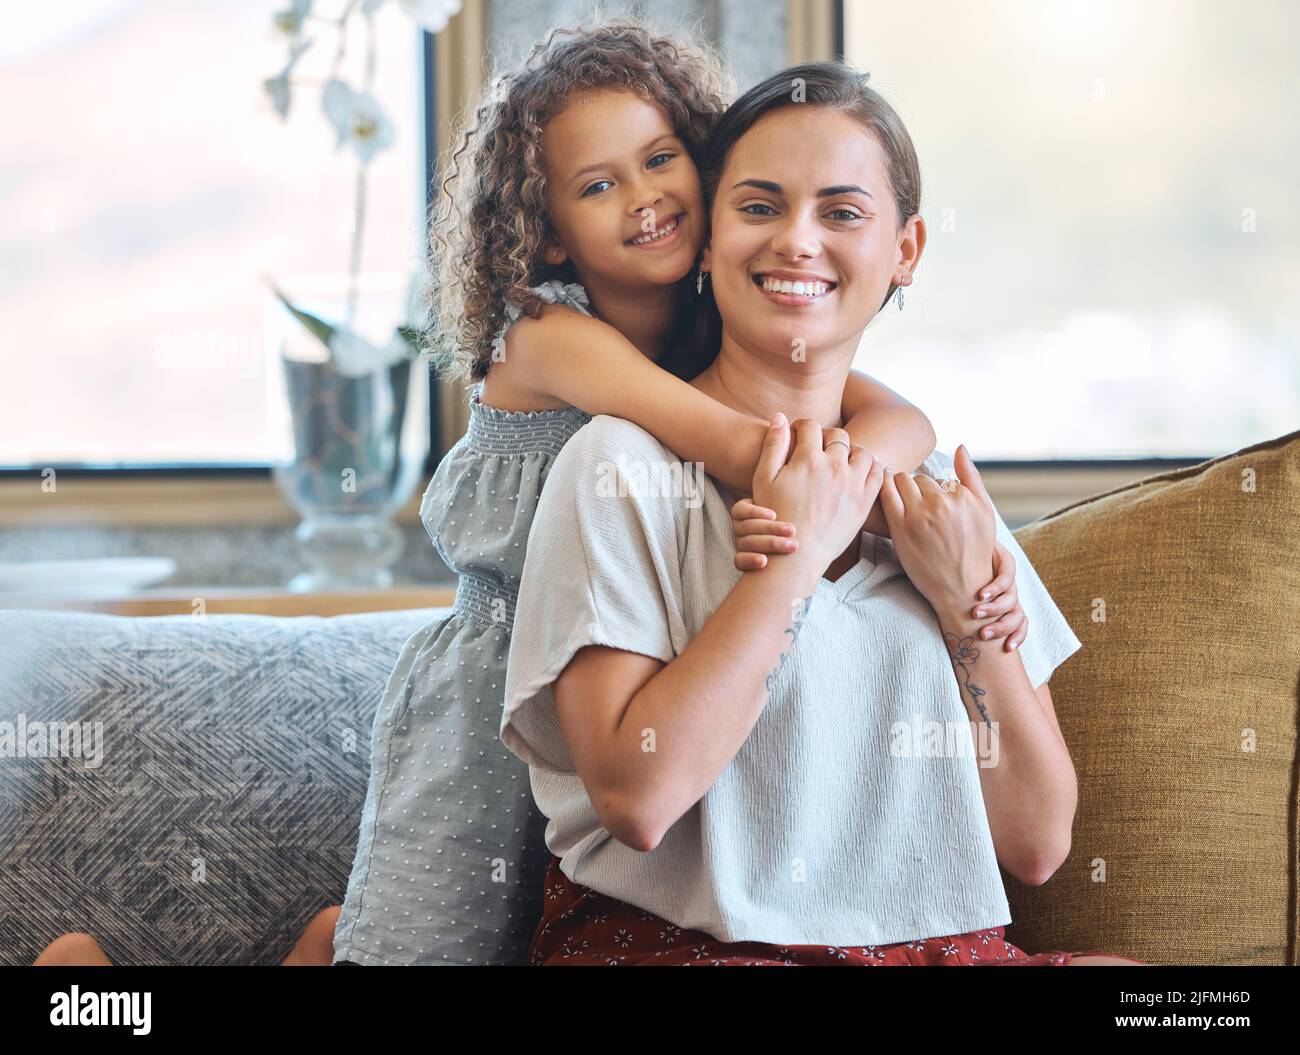 Porträt eines kleinen Mädchens, das ihre Mutter von hinten umarmt und Liebe und Zuneigung zeigt, während sie zu Hause auf der Couch sitzt. Süßer Moment zwischen der Mutter Stockfoto